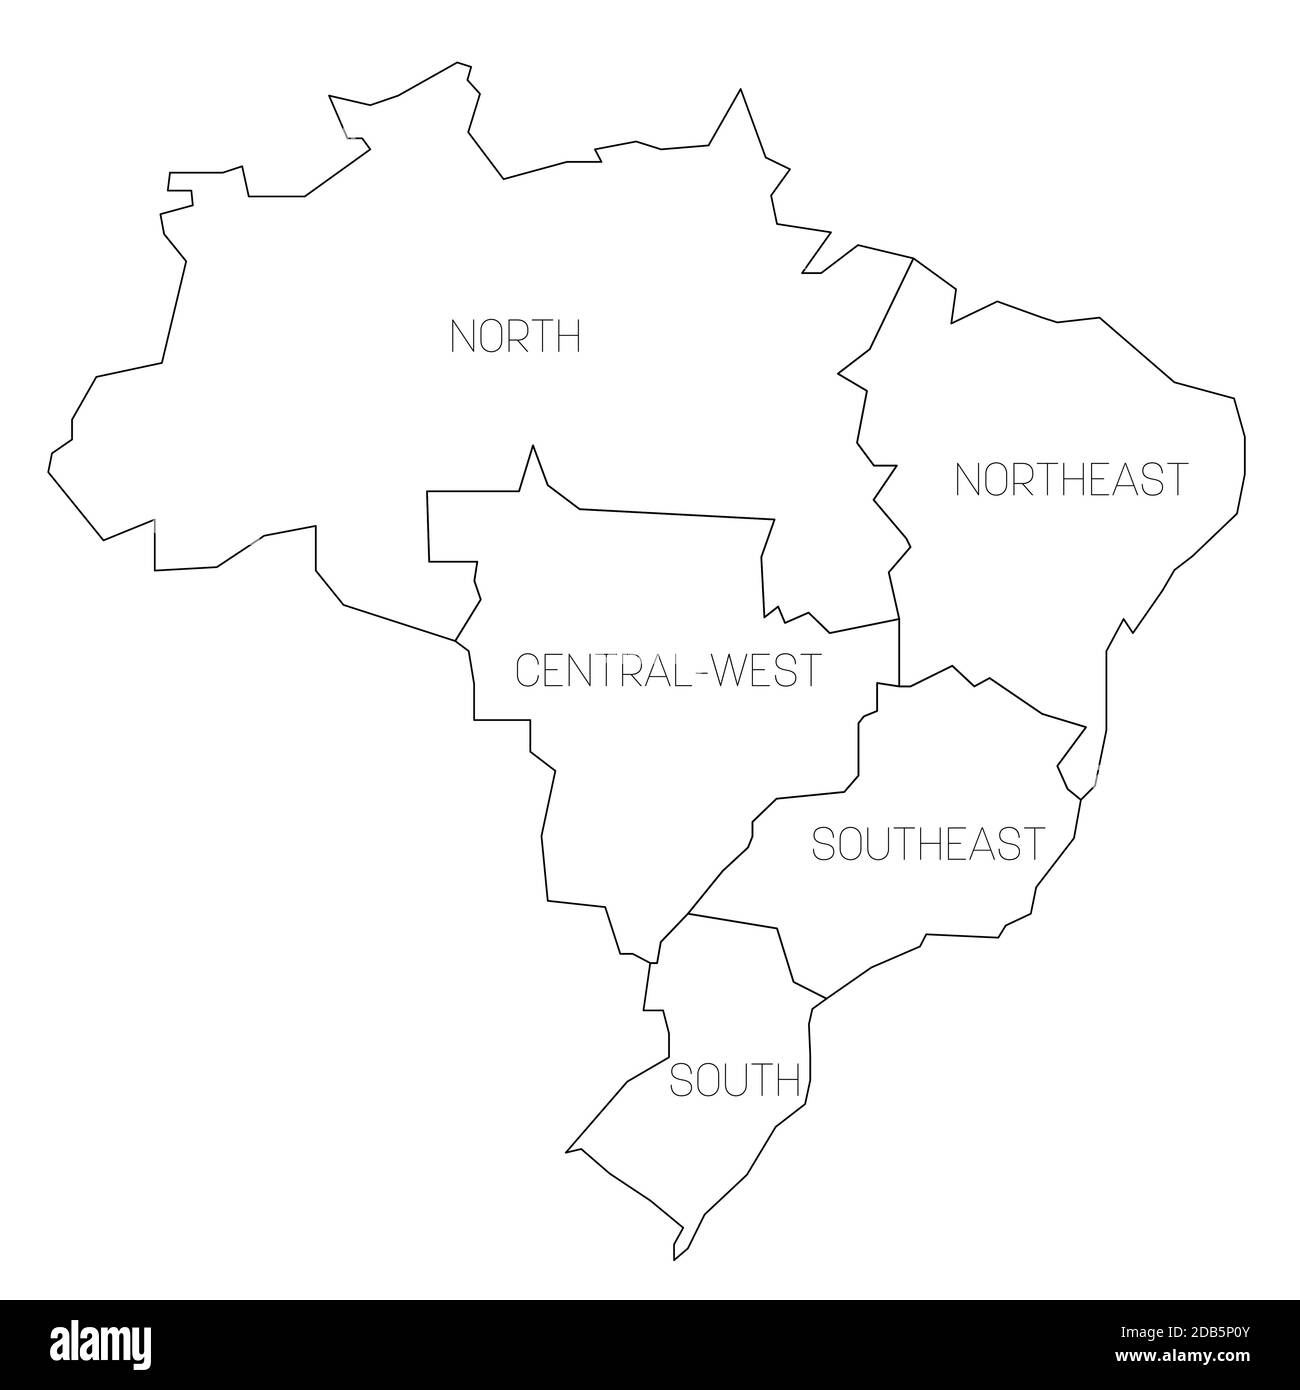 Schwarze Umrisse politische Karte von Brasilien. Staaten teilen sich durch Farbe in 5 Regionen. Einfache Vektorkarte mit Beschriftungen. Stock Vektor